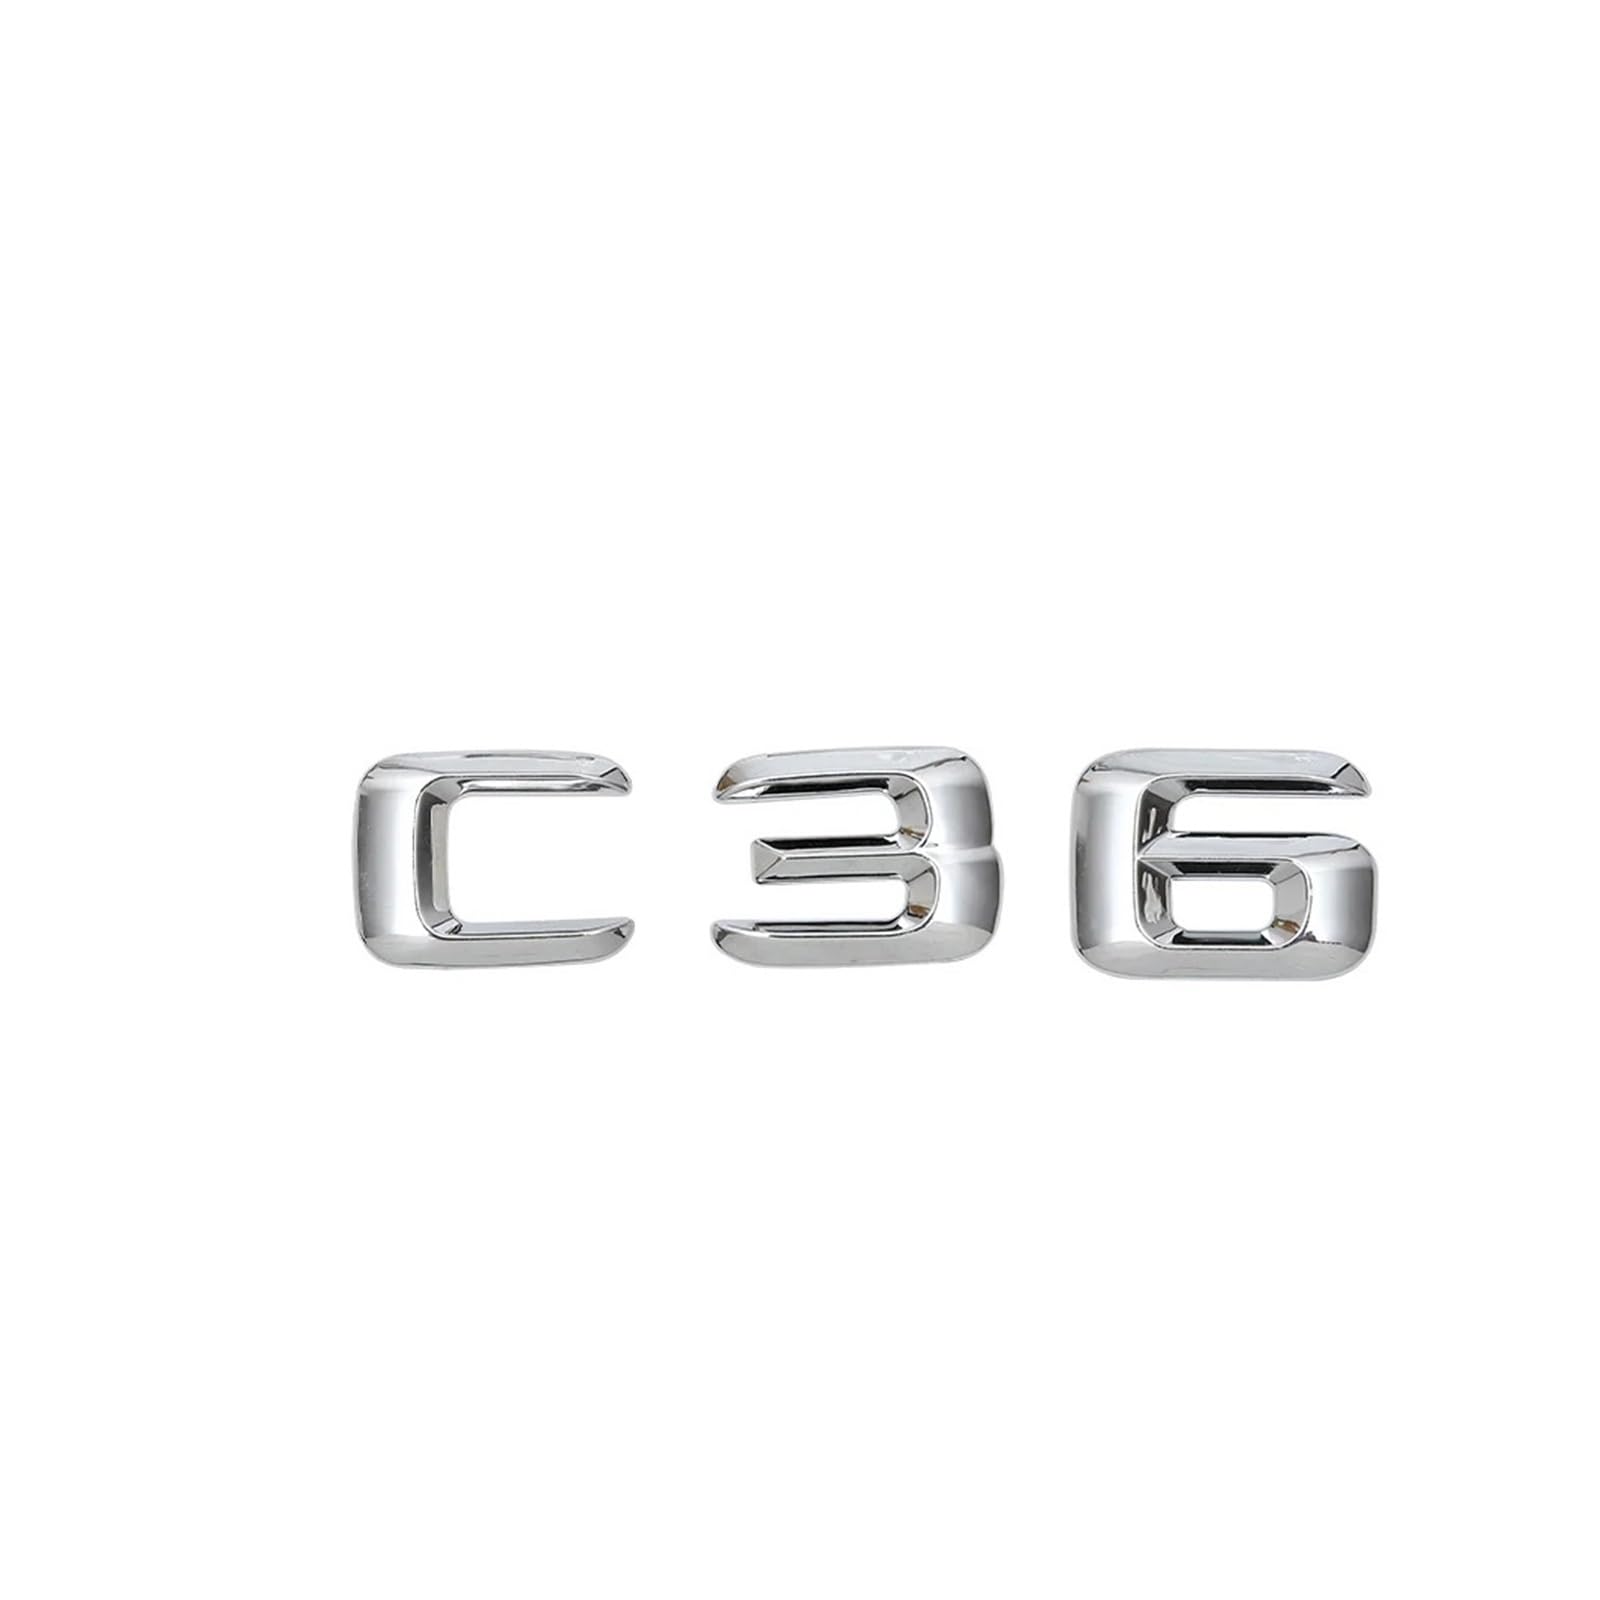 NIBOTT Auto-hinterer Kofferraum-Emblem-Schriftzug-Abzeichen-Aufkleber C 36 for C-Klasse C36 AMG W204 W203 W211 W210 W212 W205 W124 W163 von NIBOTT